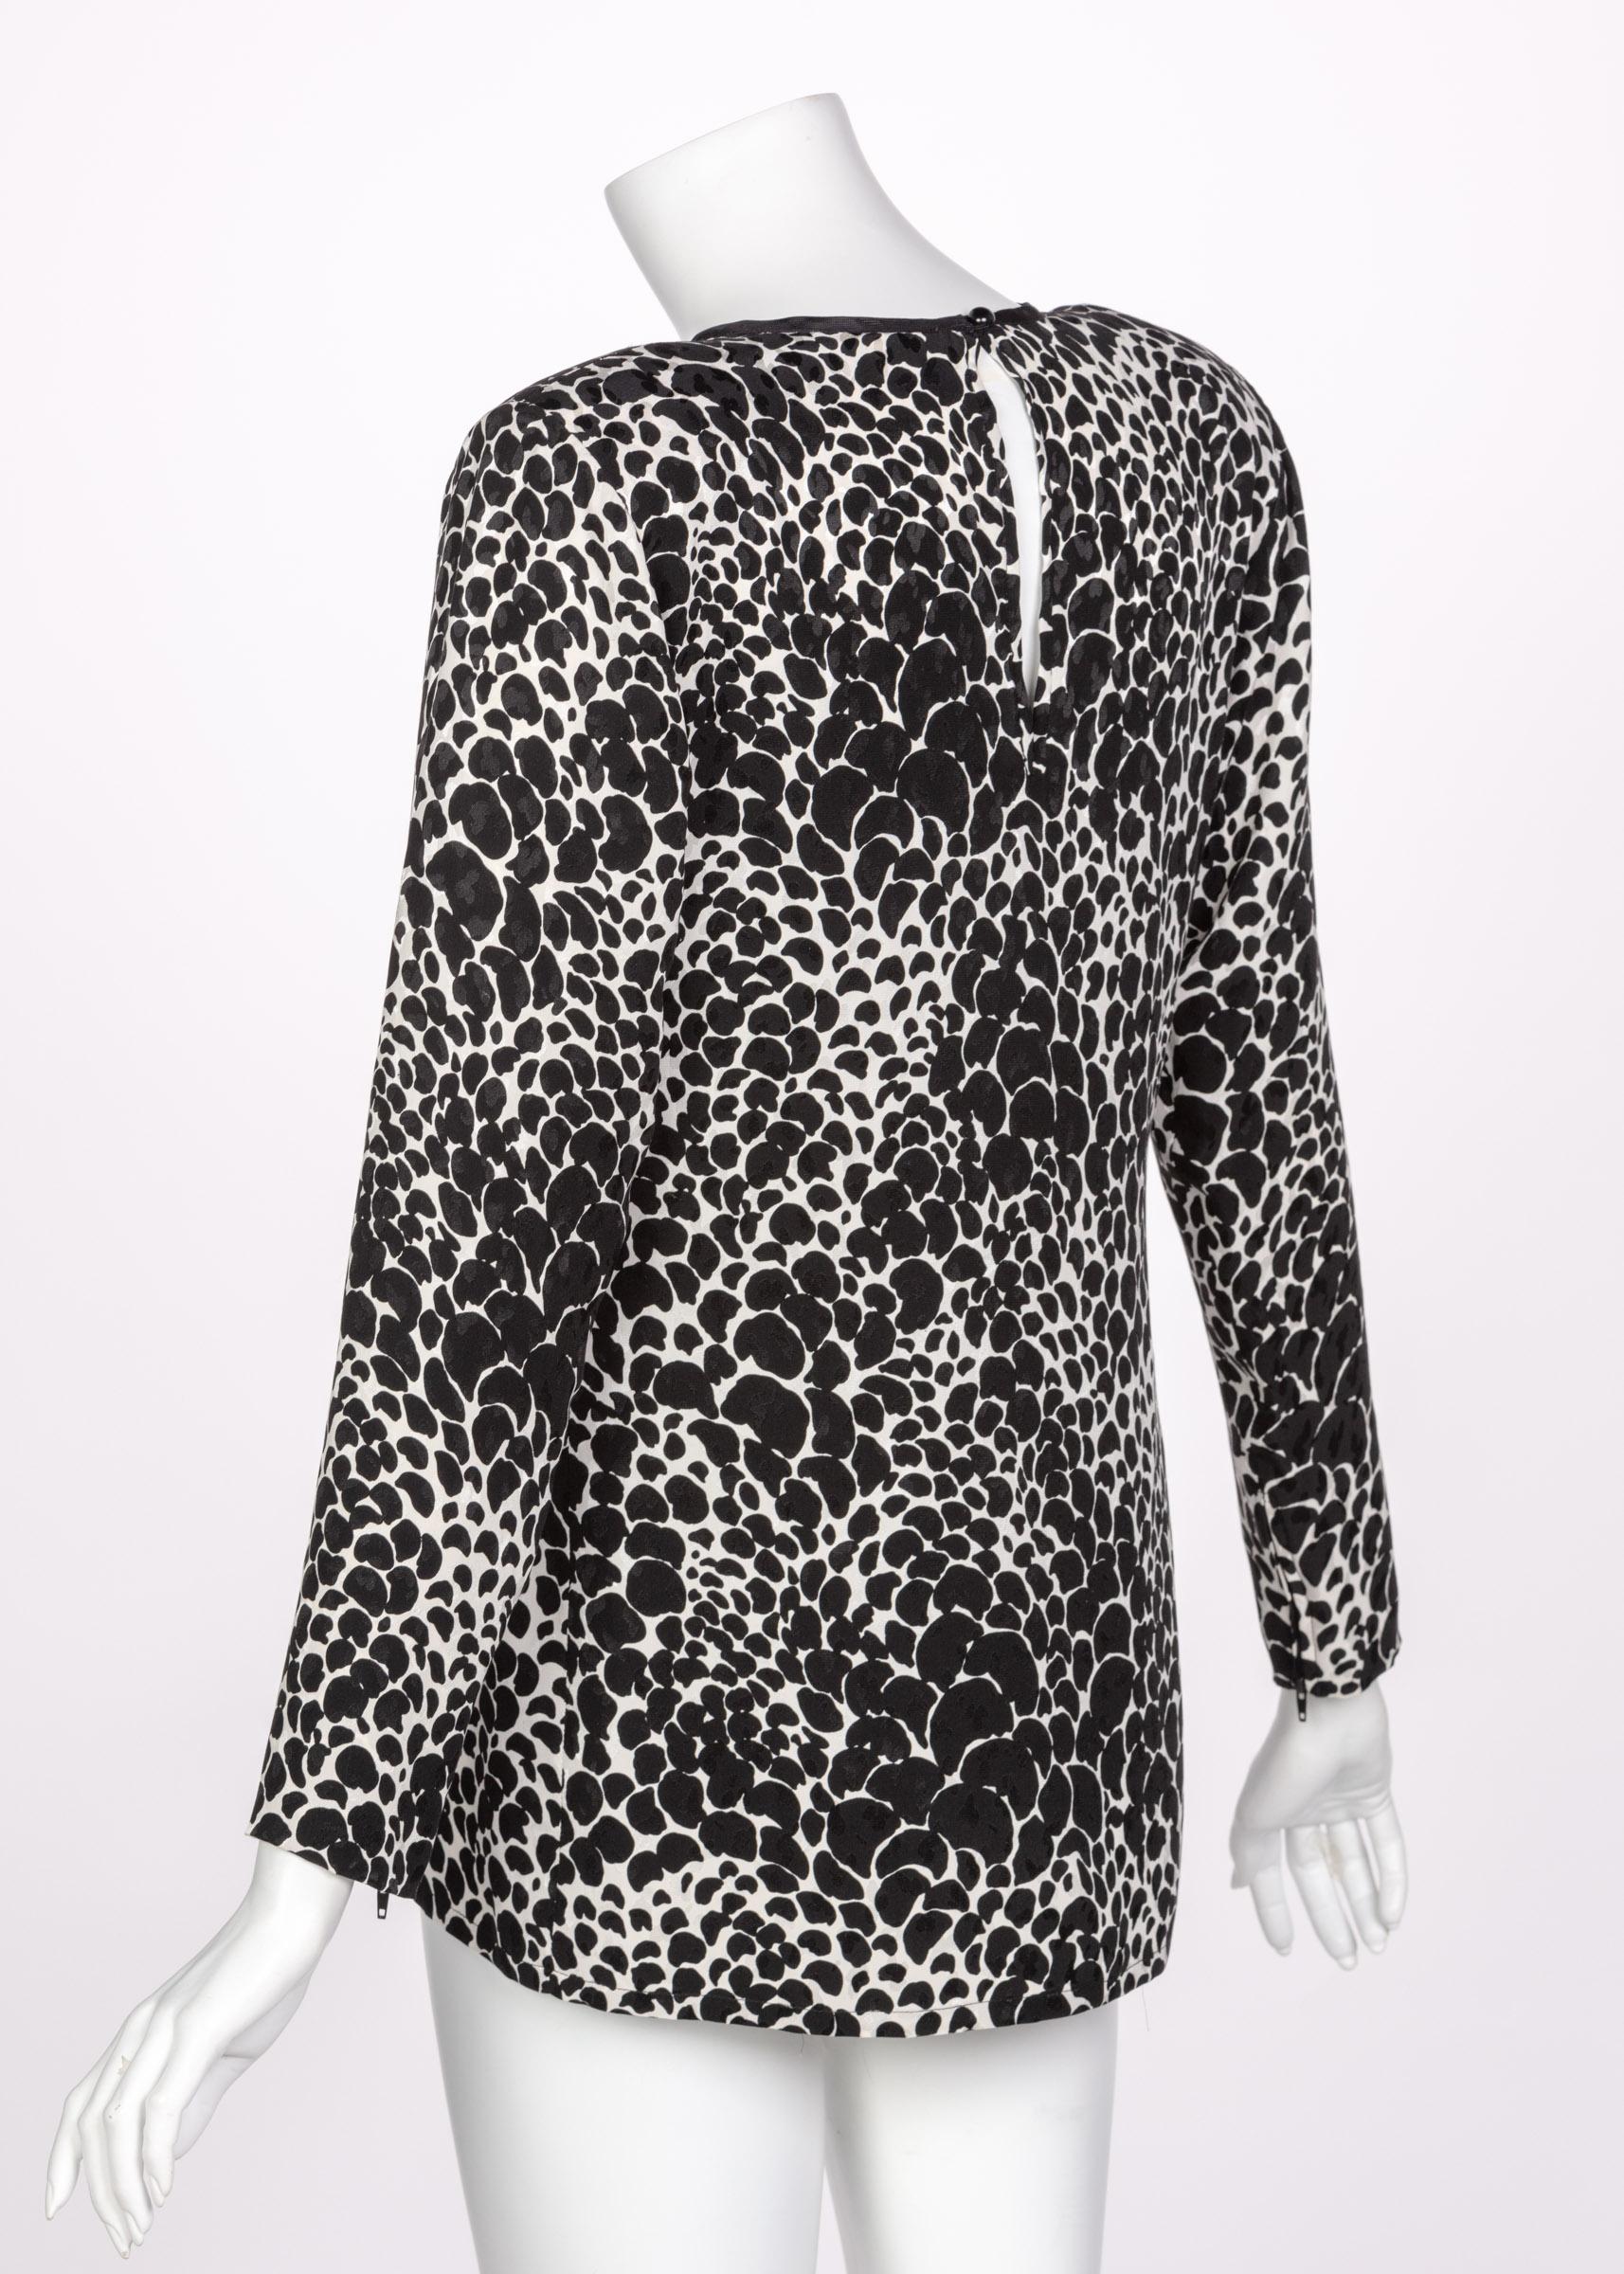 Women's Yves Saint Laurent YSL Black White Silk Print Blouse Top, 1970s For Sale